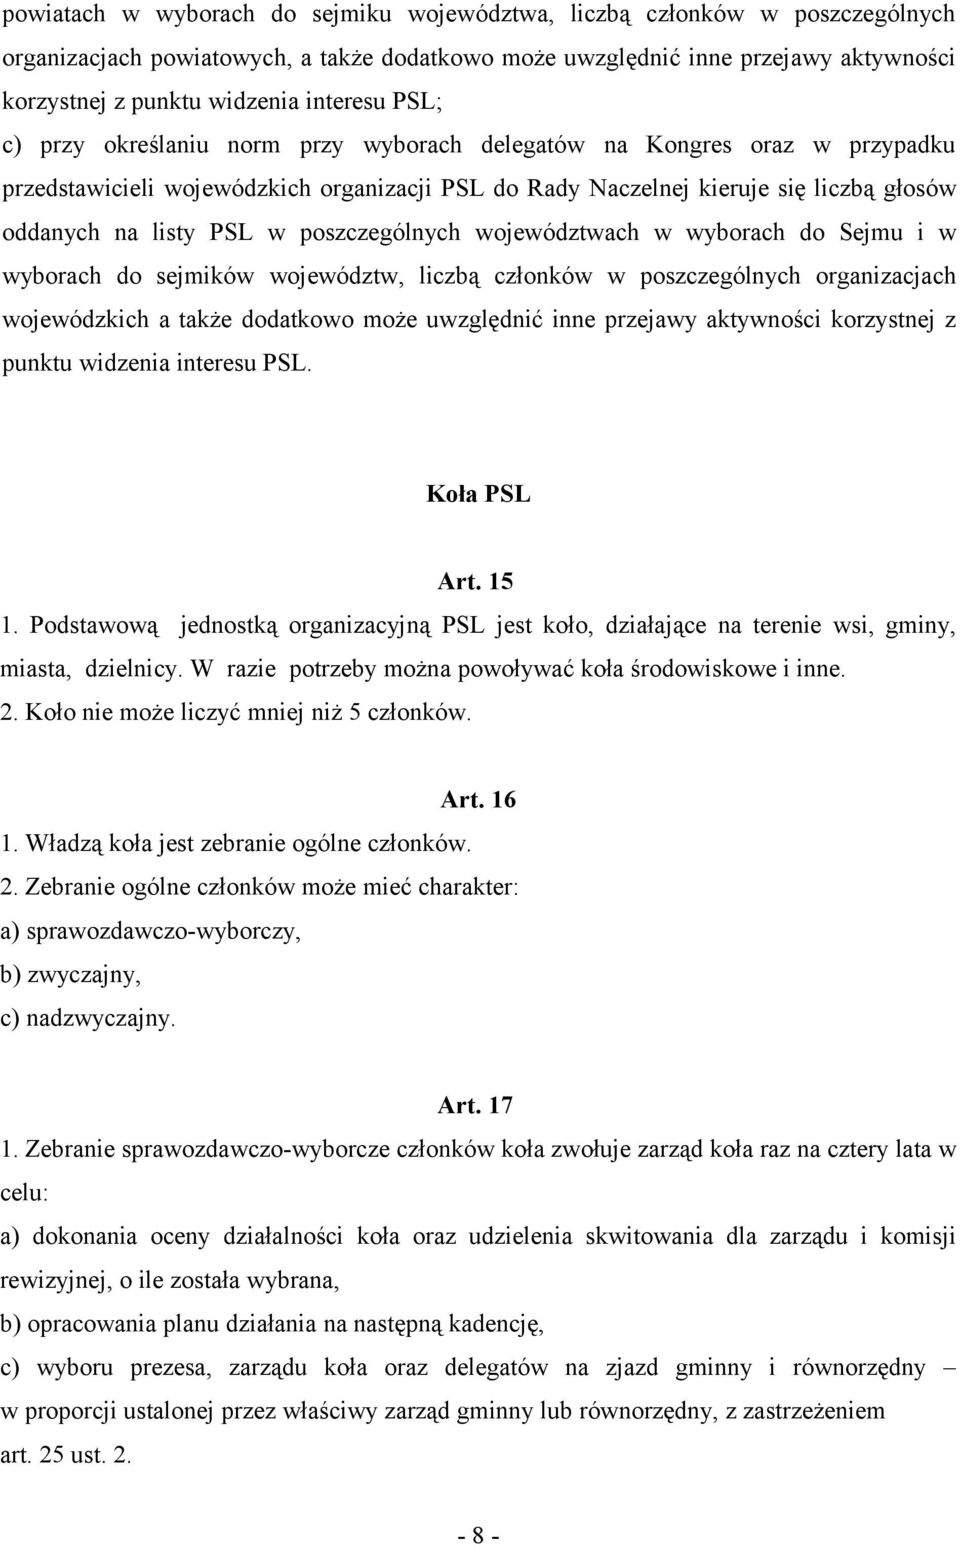 PSL w poszczególnych województwach w wyborach do Sejmu i w wyborach do sejmików województw, liczbą członków w poszczególnych organizacjach wojewódzkich a także dodatkowo może uwzględnić inne przejawy